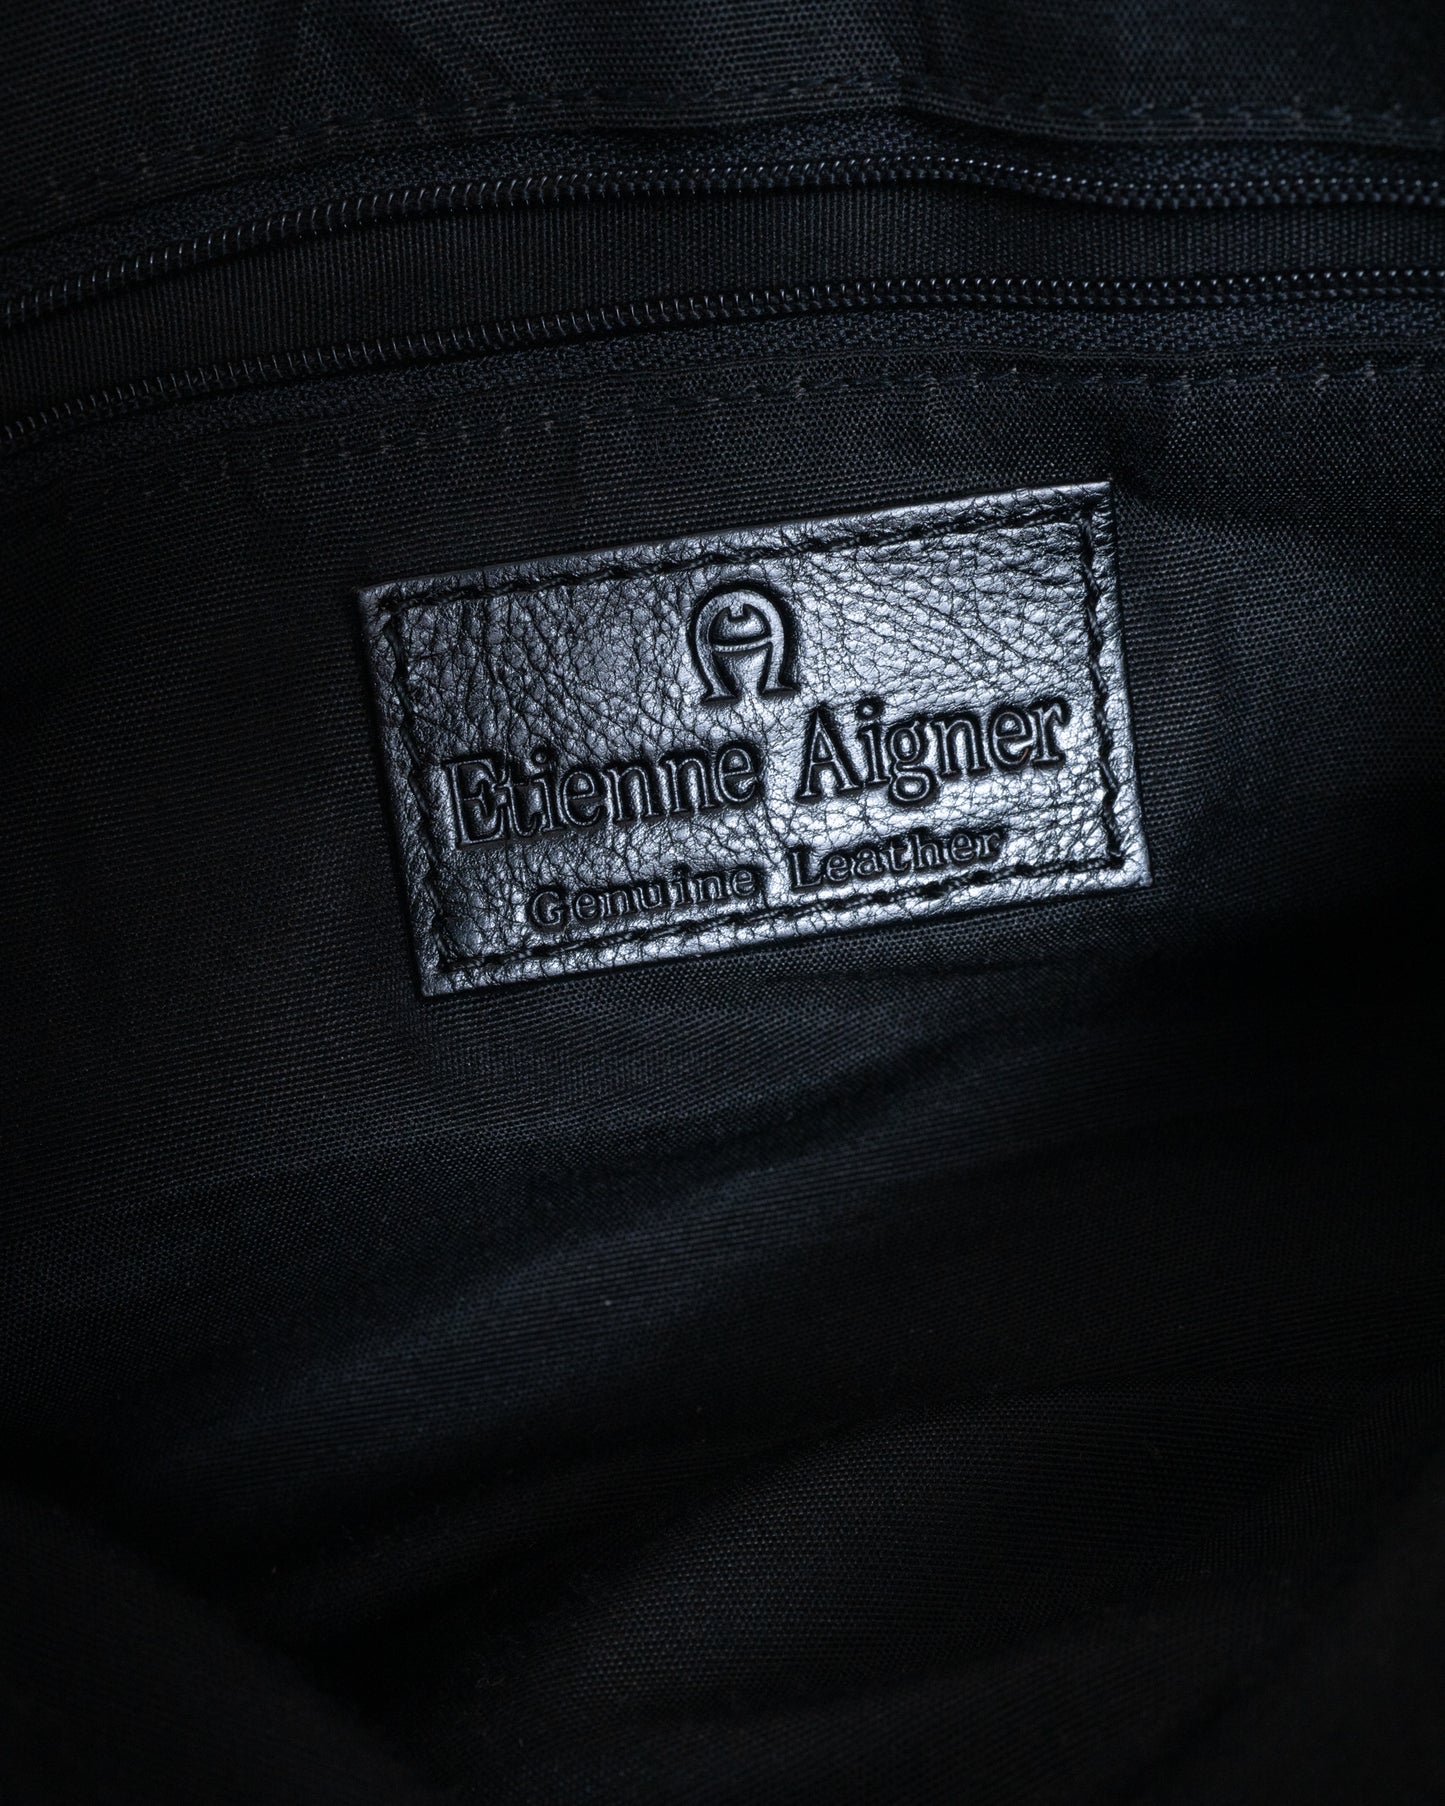 Vintage AIGNER Black Leather Bag